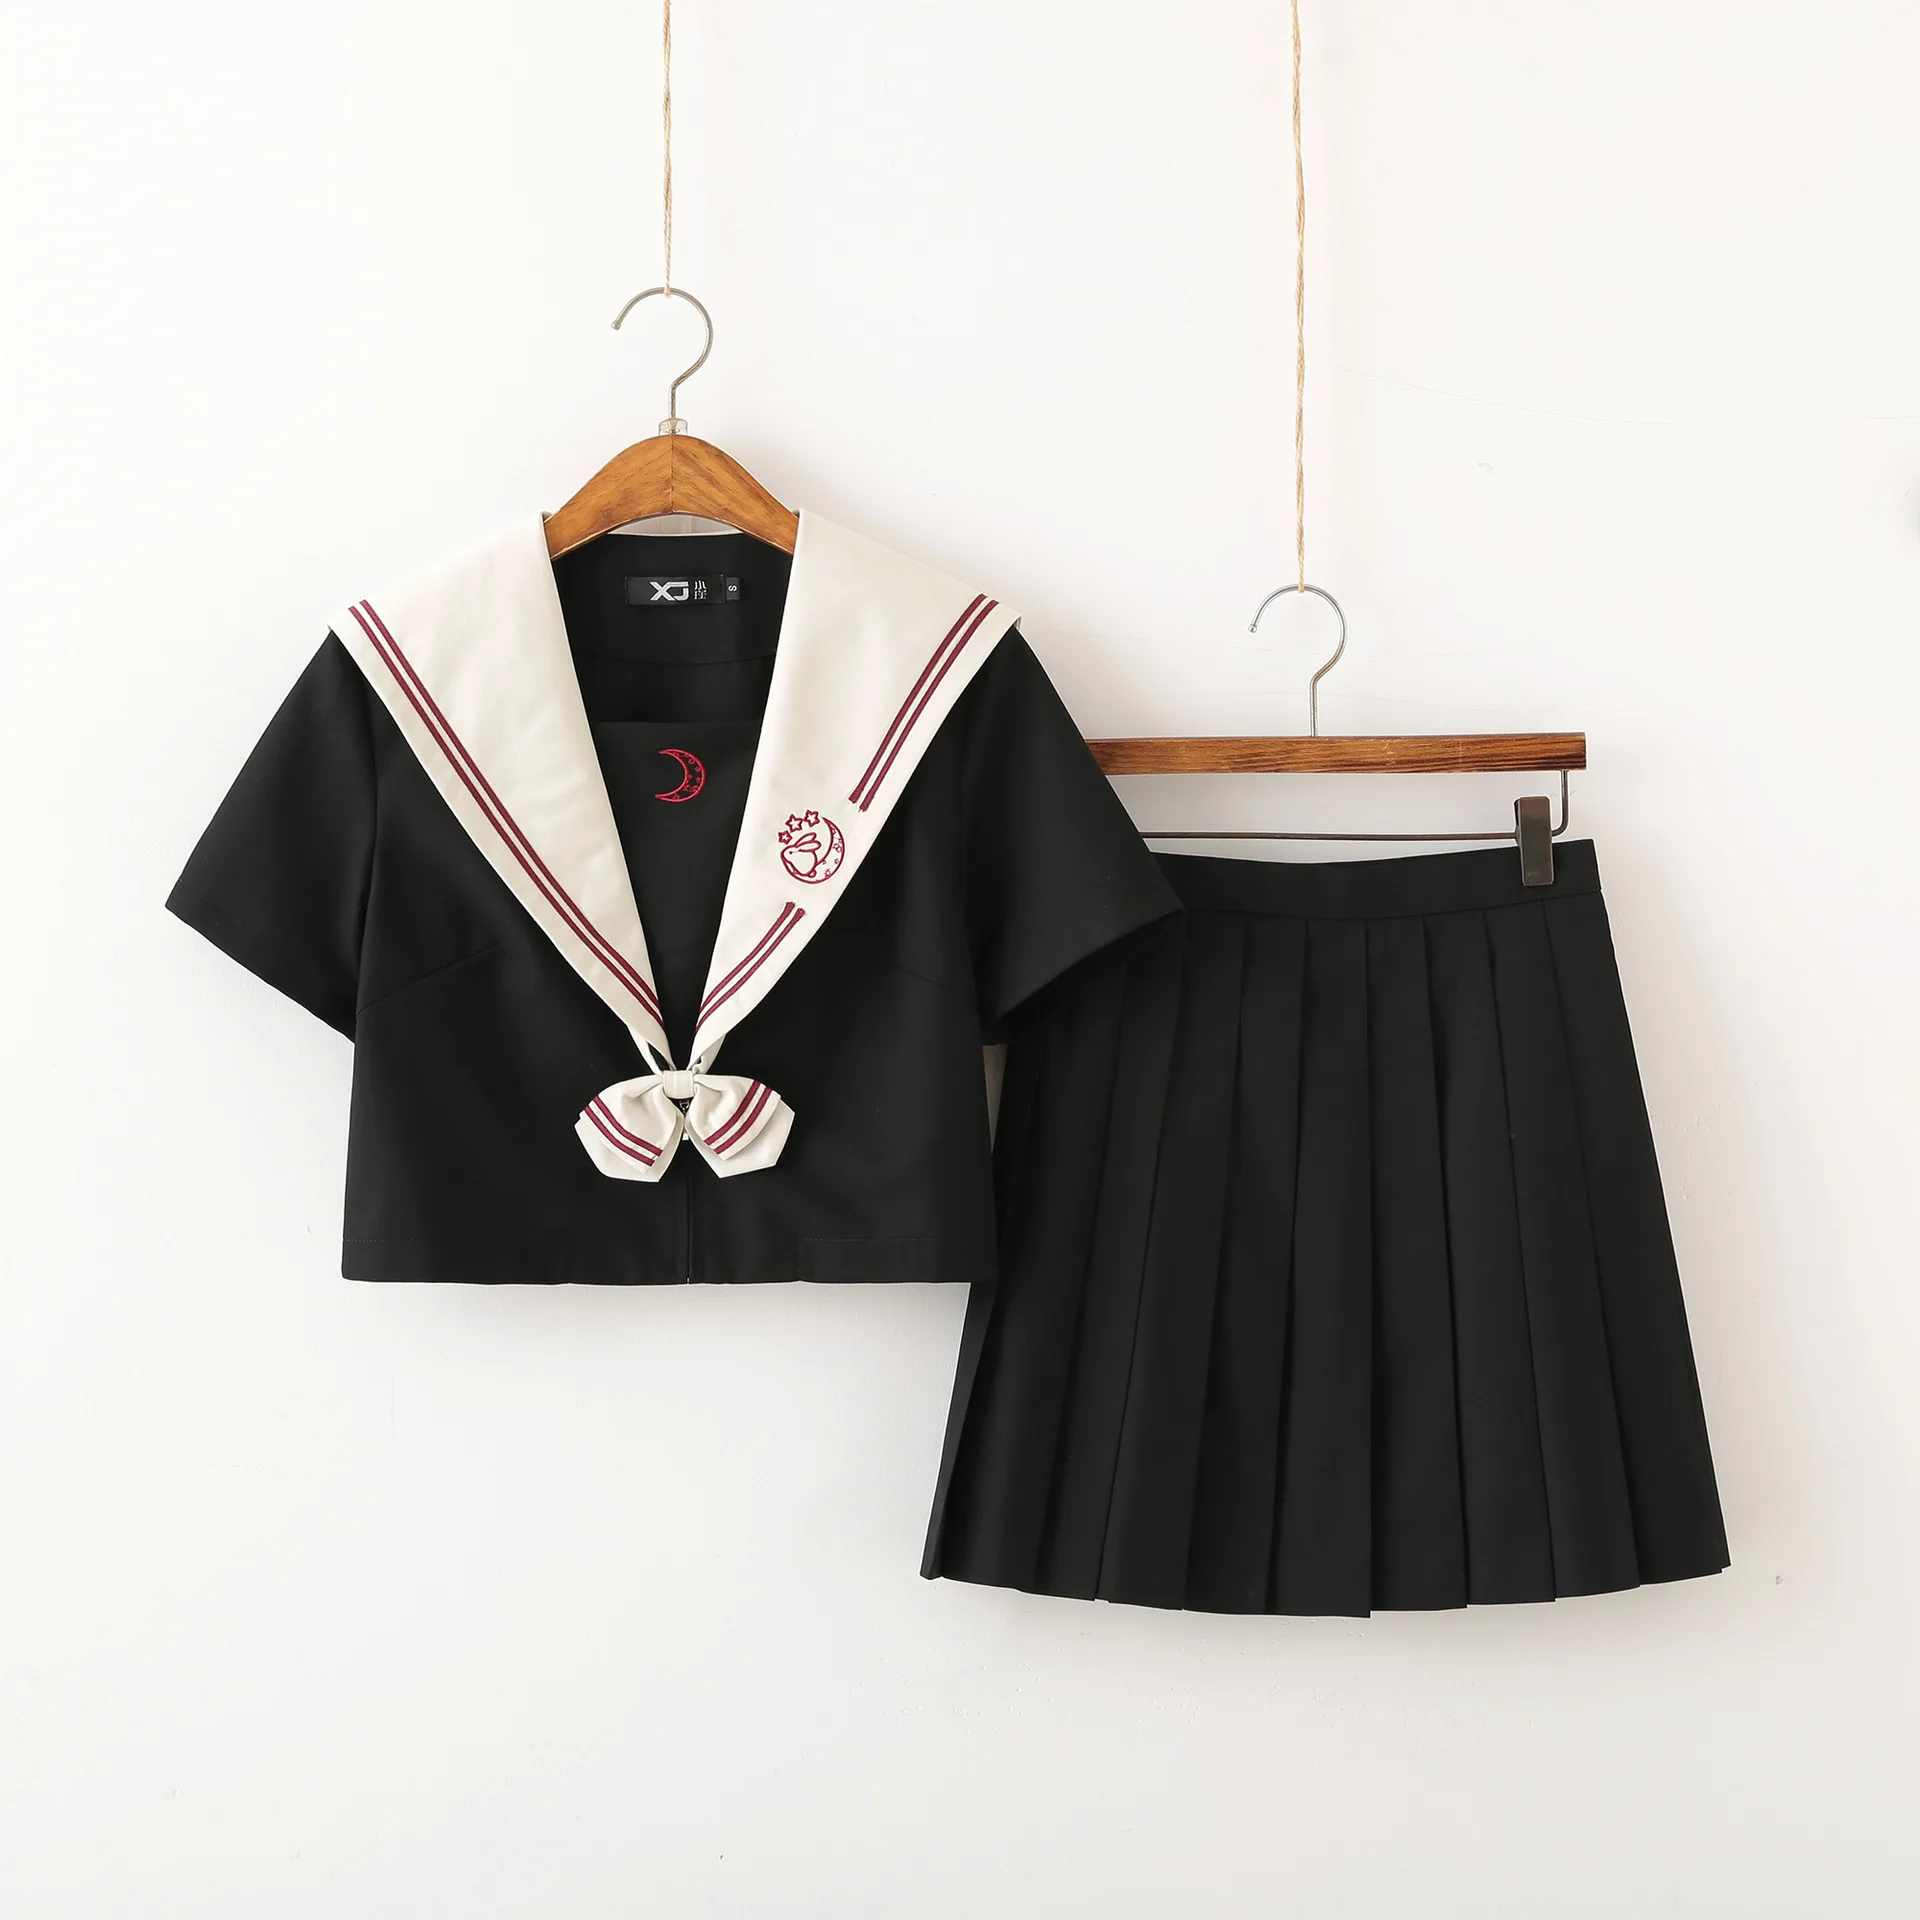 Японская школьная форма, юбка, матросский наряд, костюмы, униформа Jk, костюм, плиссированная юбка для девочек, аниме, косплей школьная форма, ...